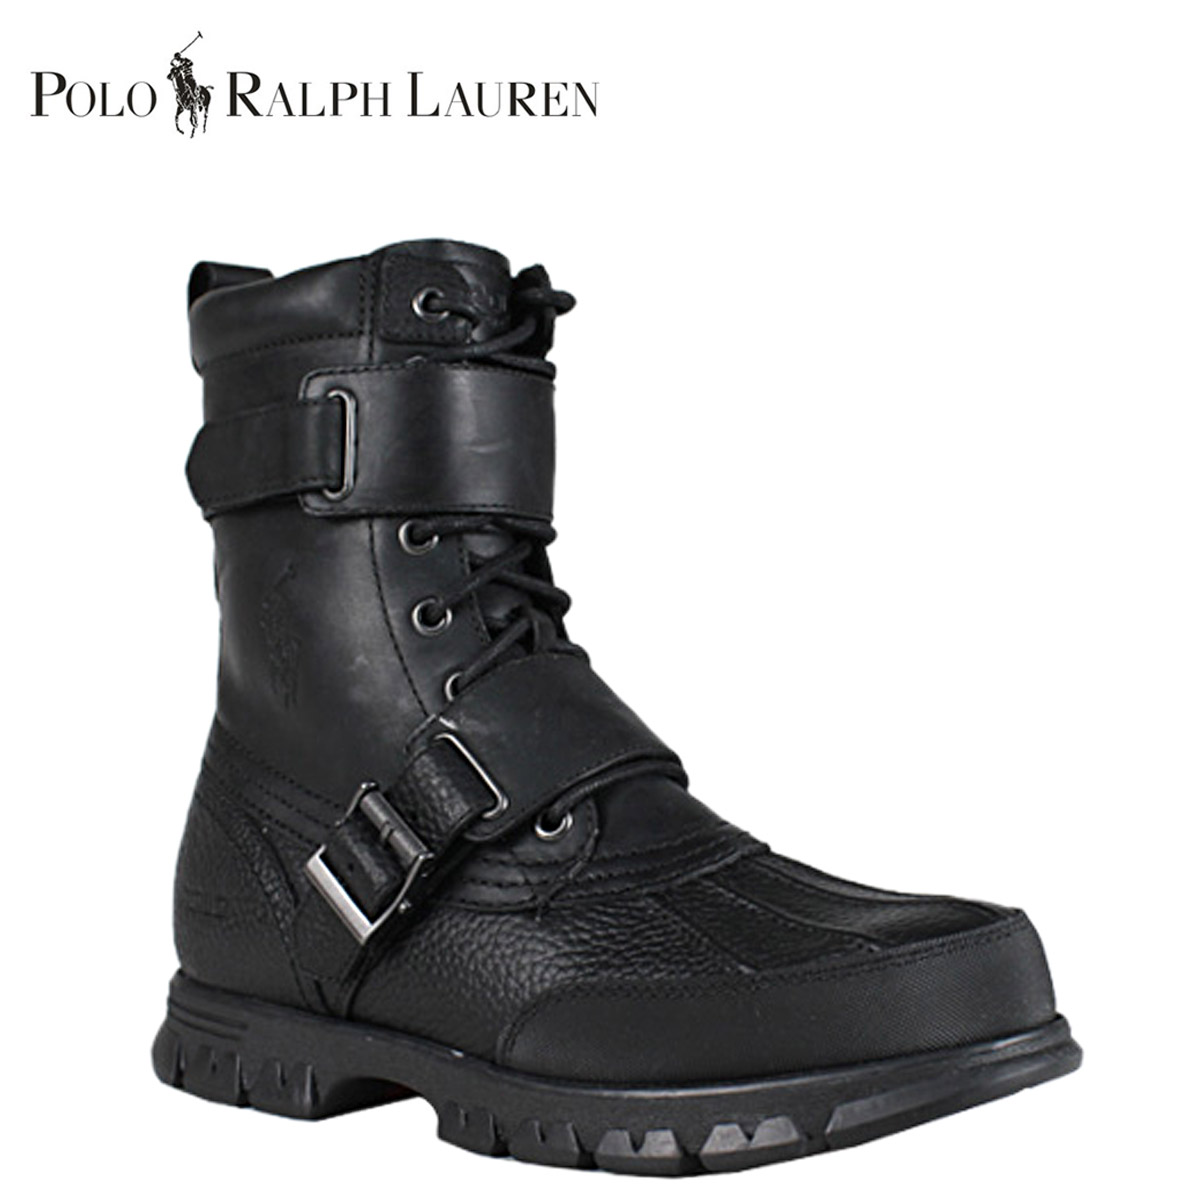 ralph lauren boots sale